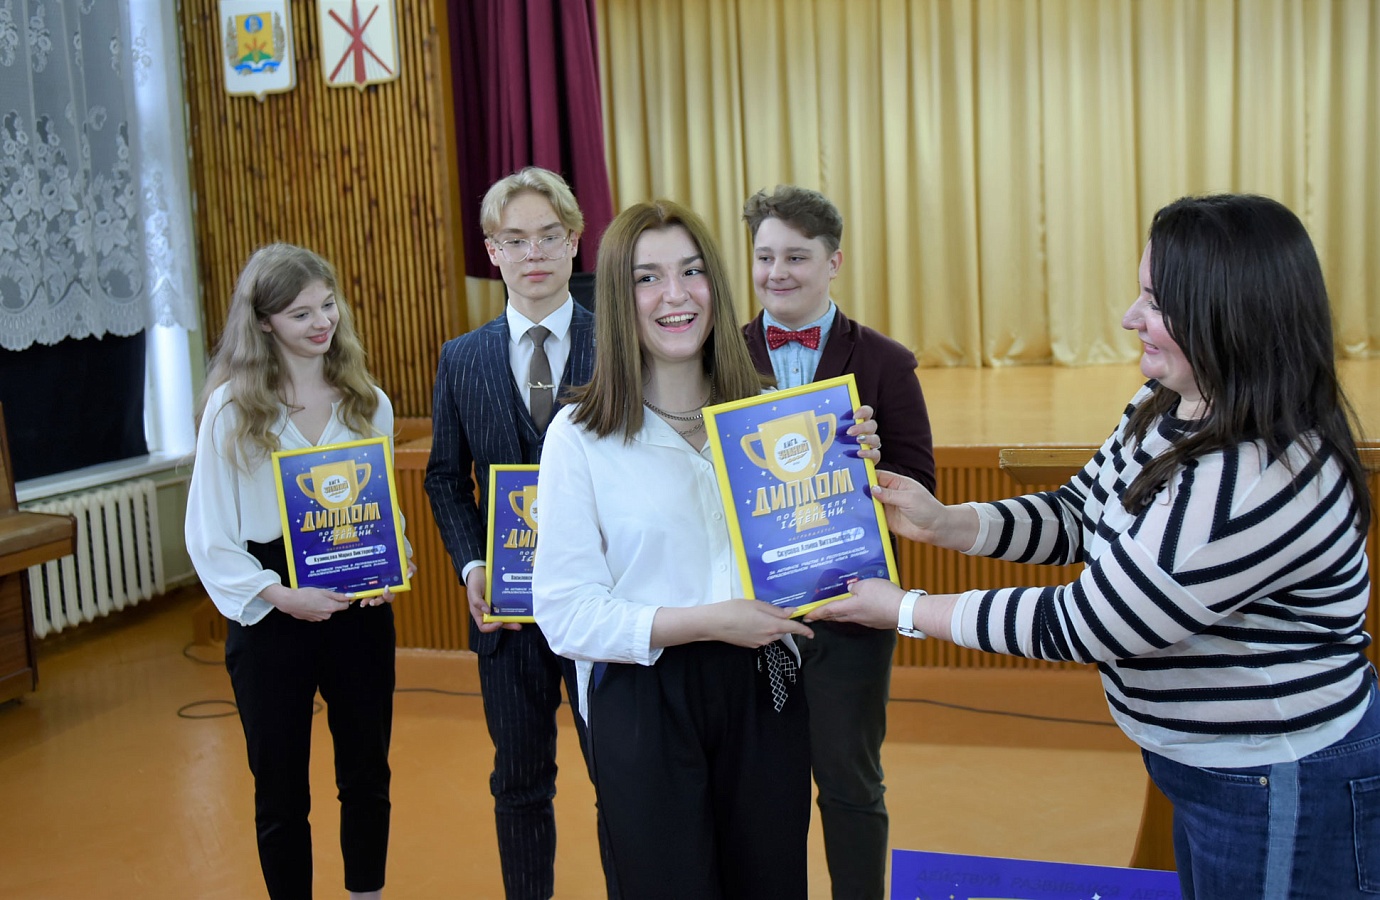 Ольга Иваненко, основатель и коммерческий директор мобильного приложения TeenUp, вручает дипломы победителей команде ХХ-Stars